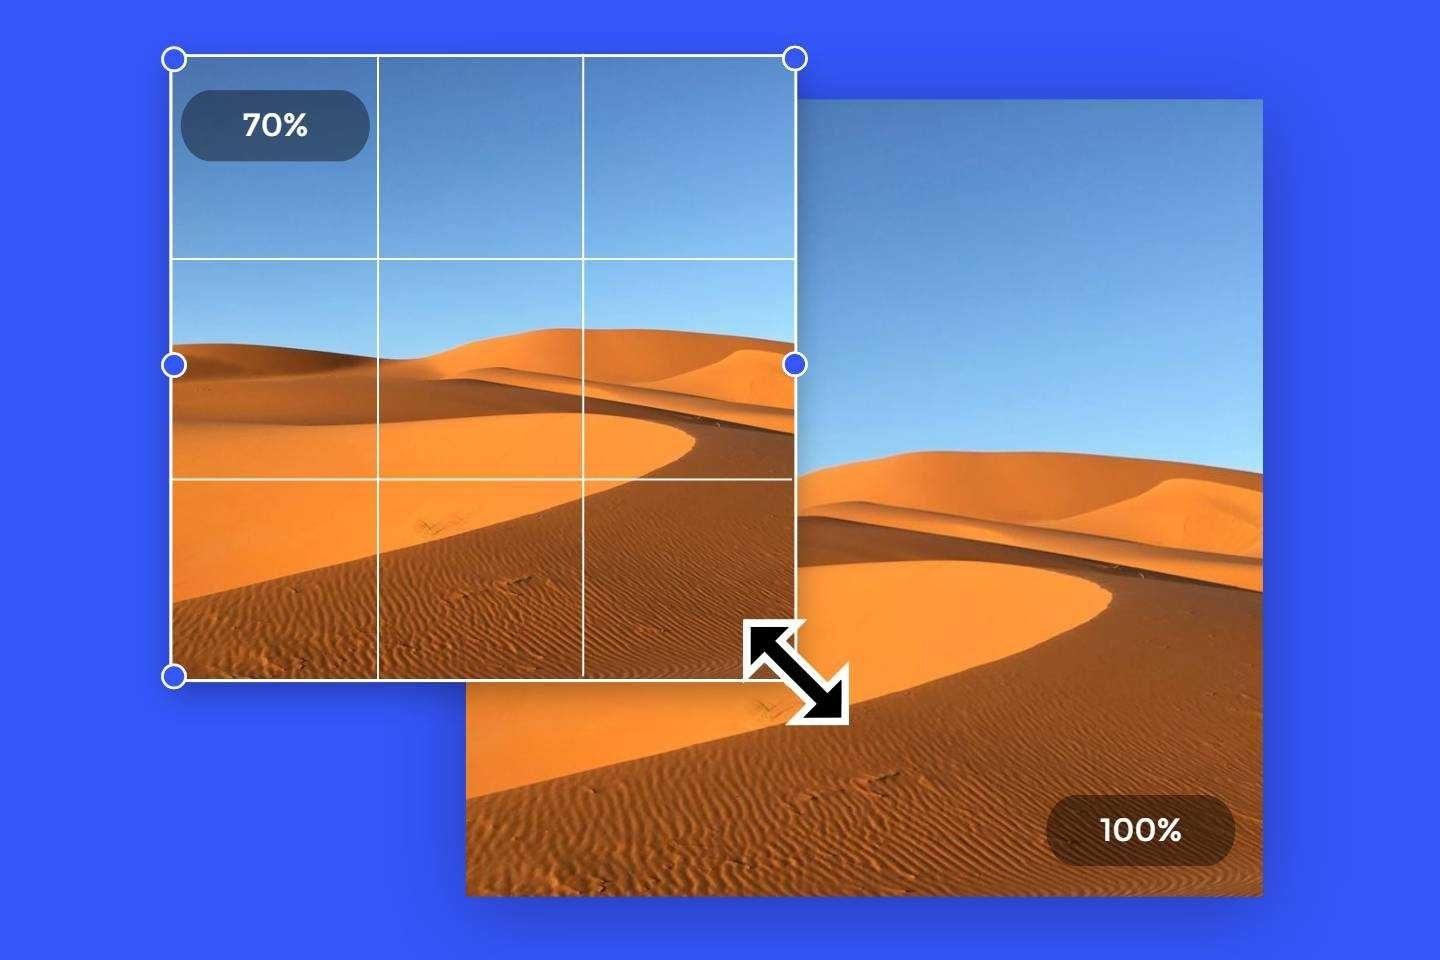 Merubah Pixel Foto Online. Ubah Ukuran Foto Online Secara Gratis